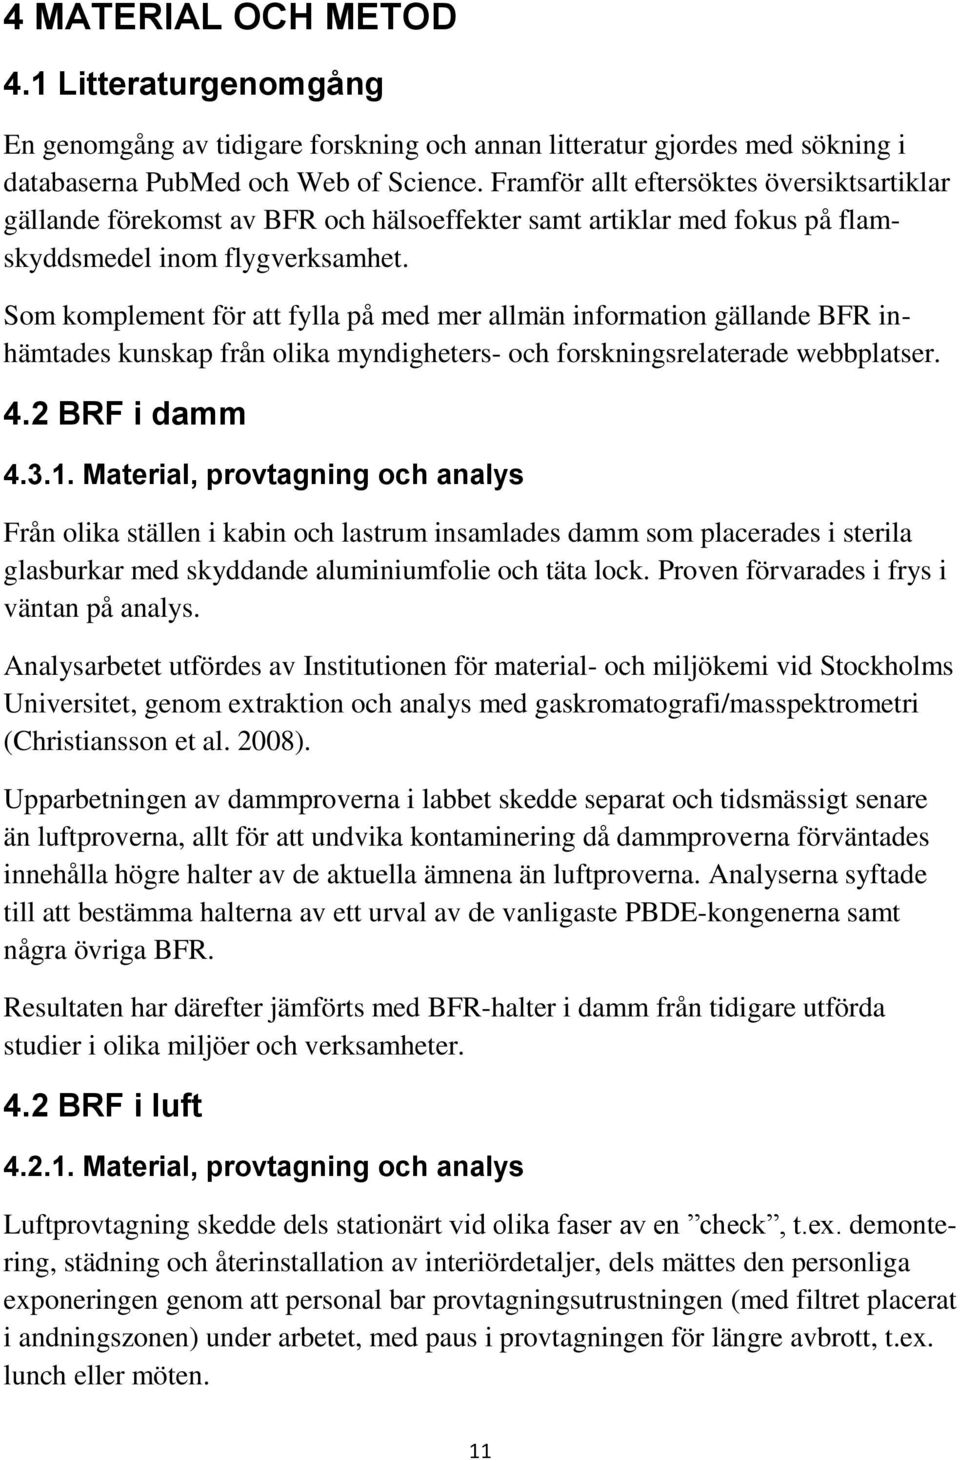 Som komplement för att fylla på med mer allmän information gällande BFR inhämtades kunskap från olika myndigheters- och forskningsrelaterade webbplatser. 4.2 BRF i damm 4.3.1.